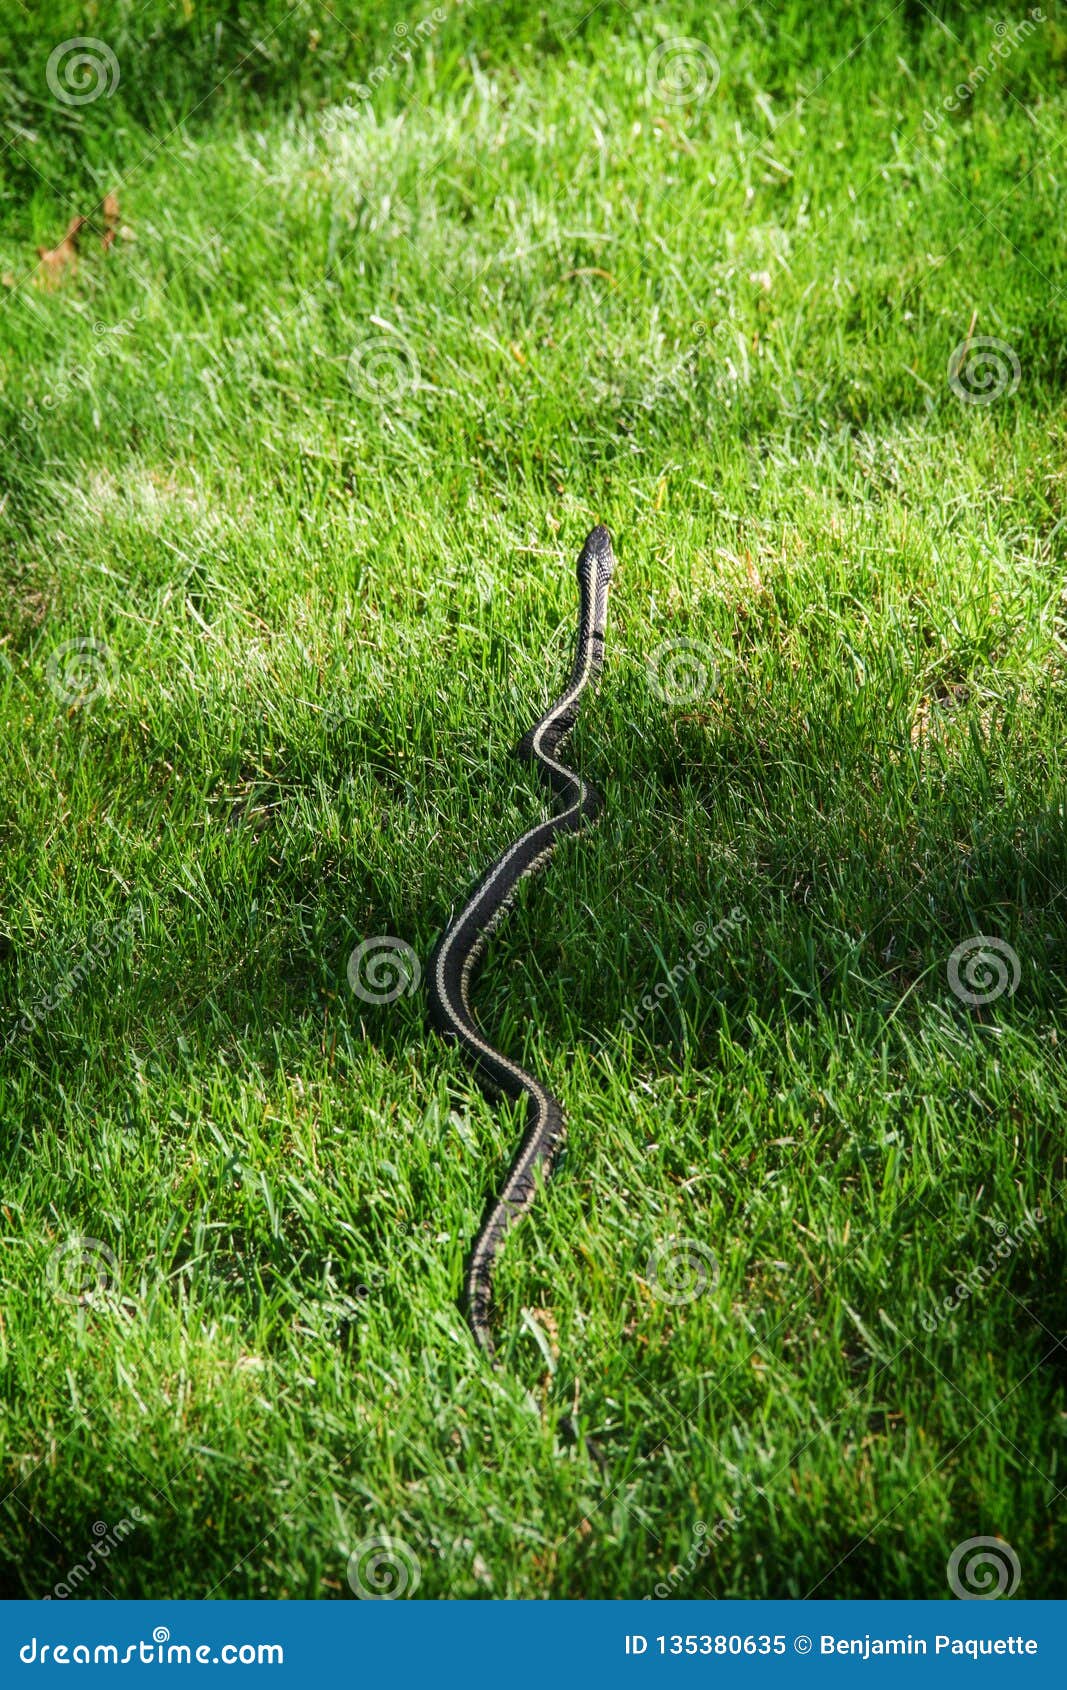 Green Garter Snake In The Grass Stock Image Image Of Black Garter